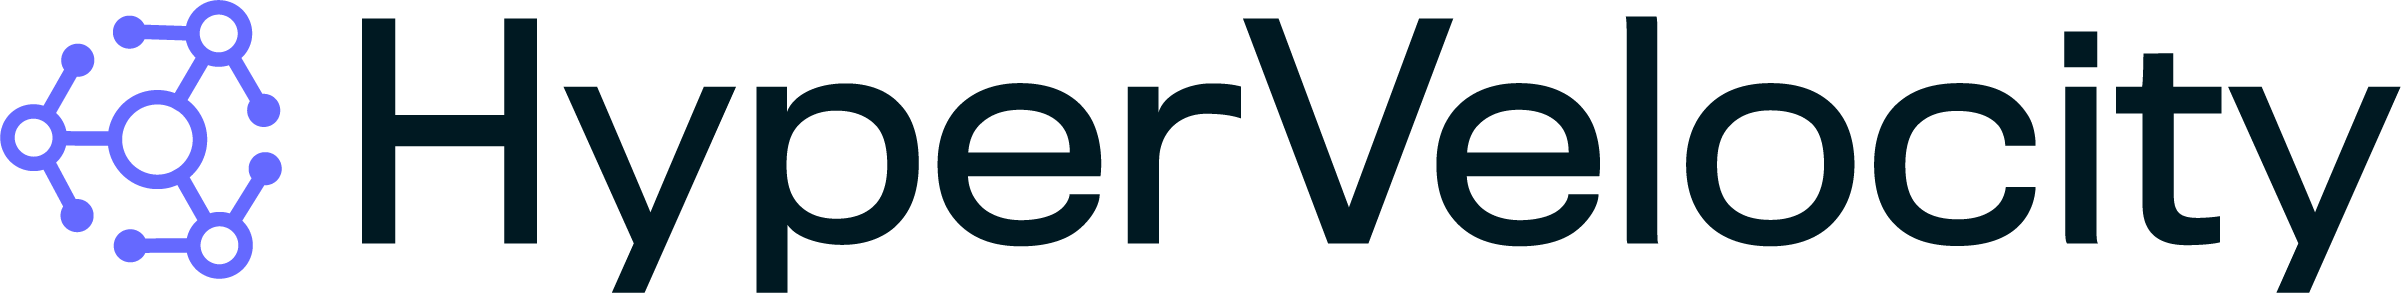 HyperVelocity-Logo